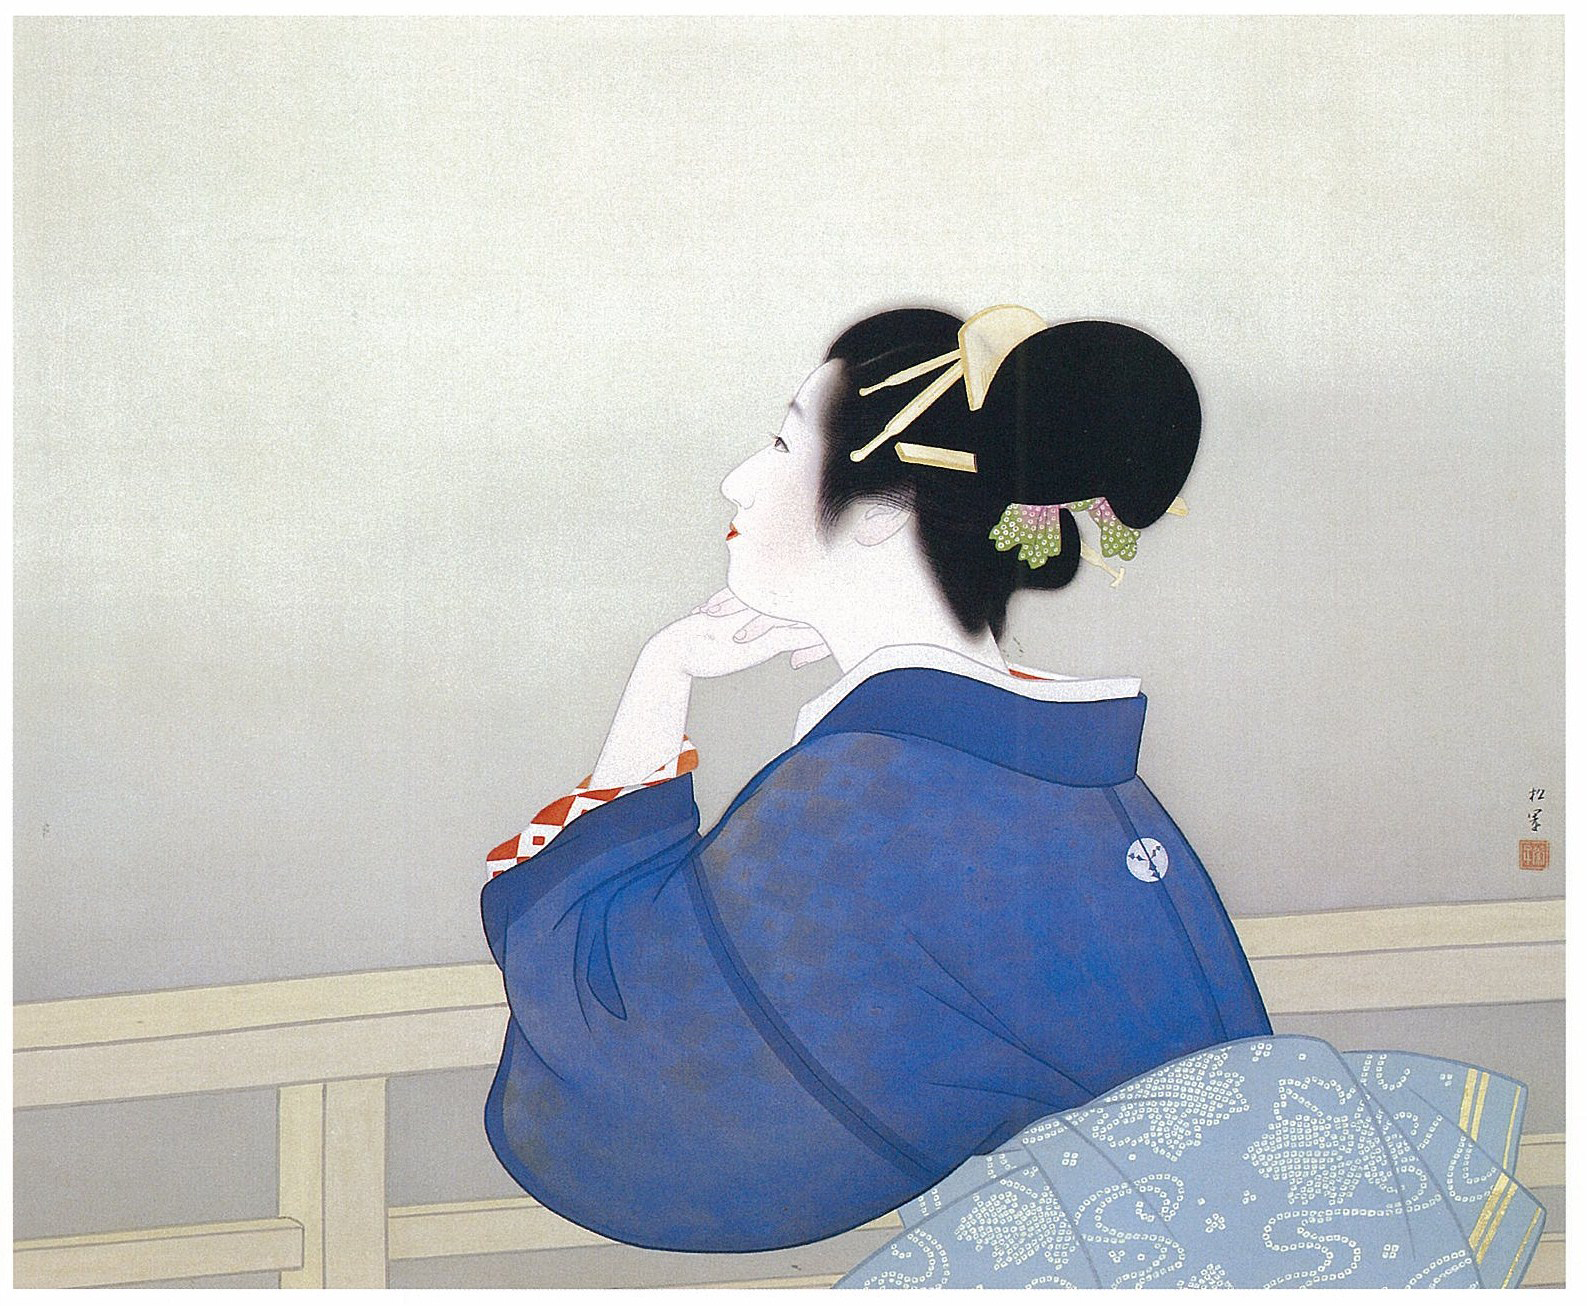 月が昇るのを待つ女性 by Uemura Shōen - 1944 - 86 x 73 cm 